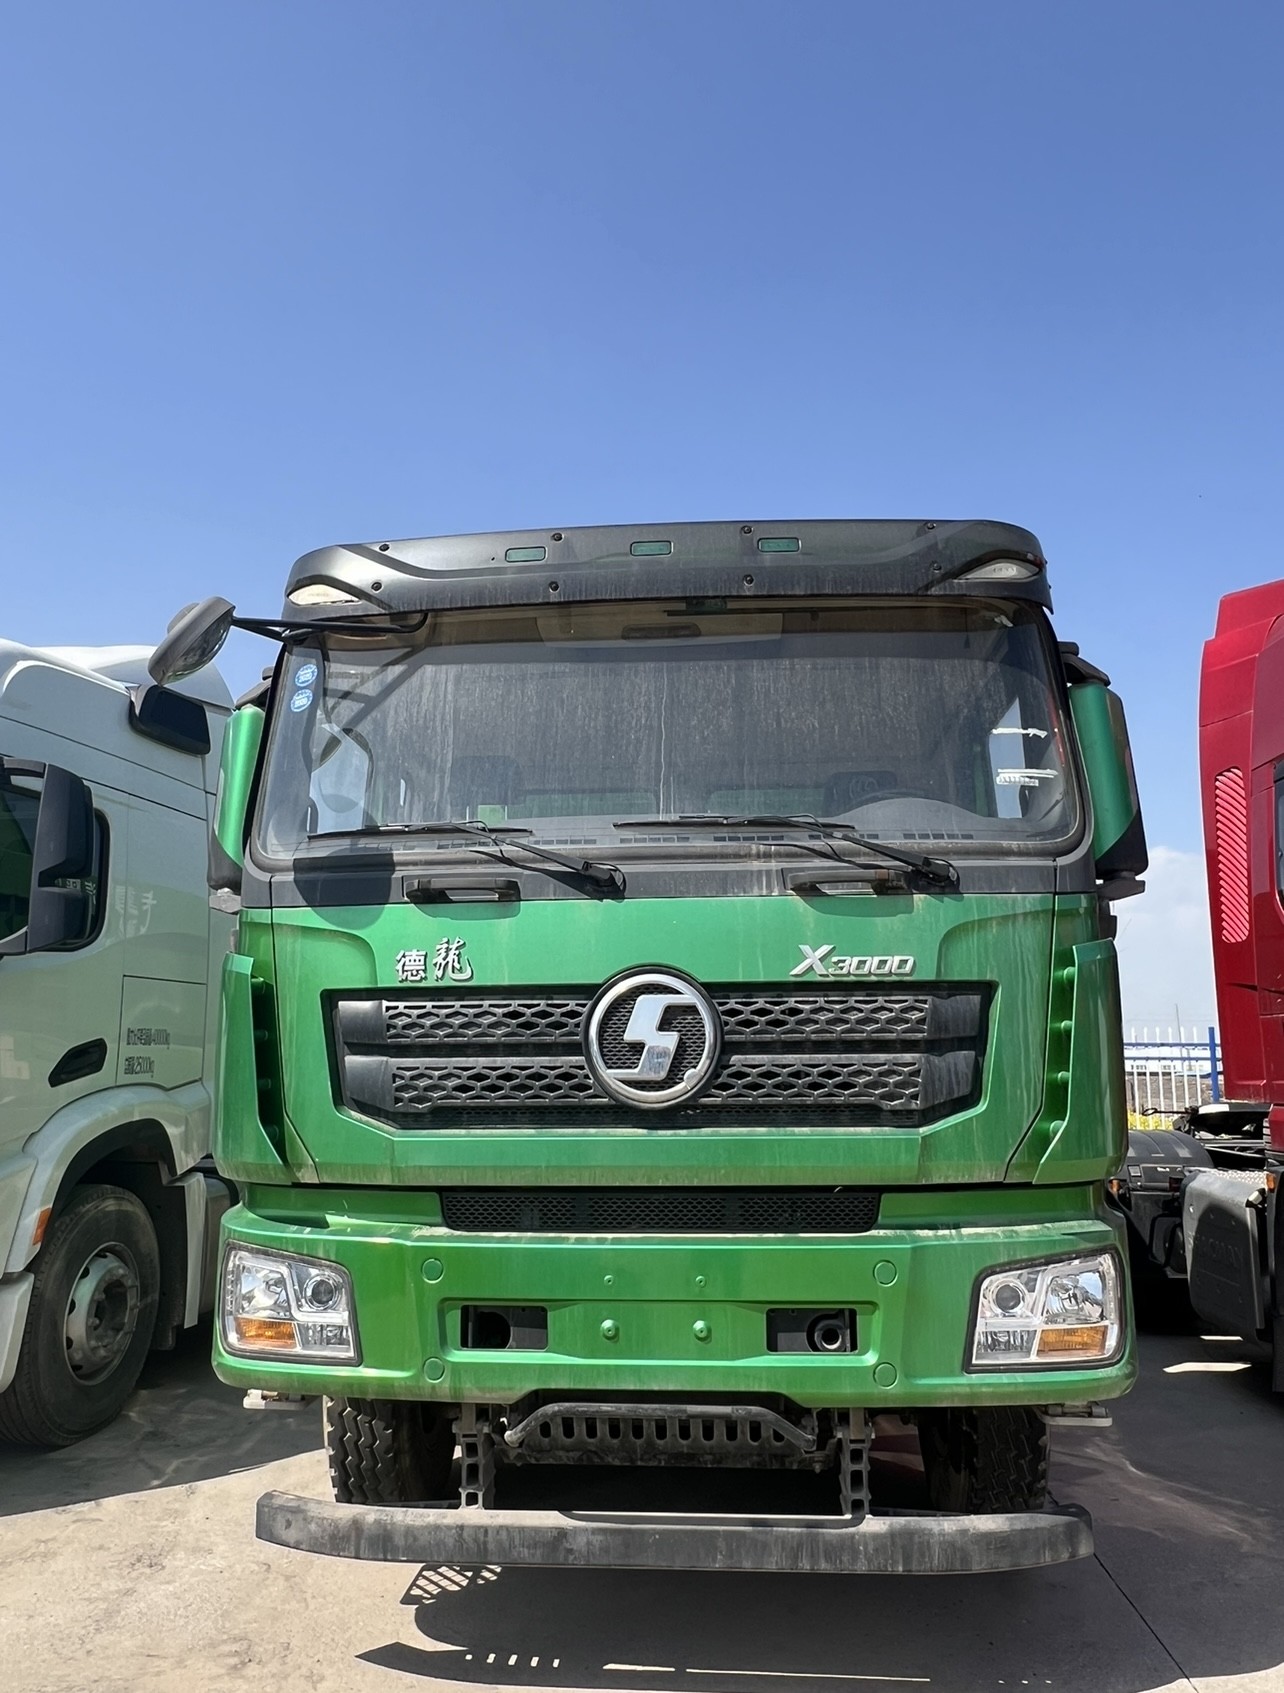 SHACMAN X3000 camión de descarga camión de tracción pesada camión 6x4 remolque